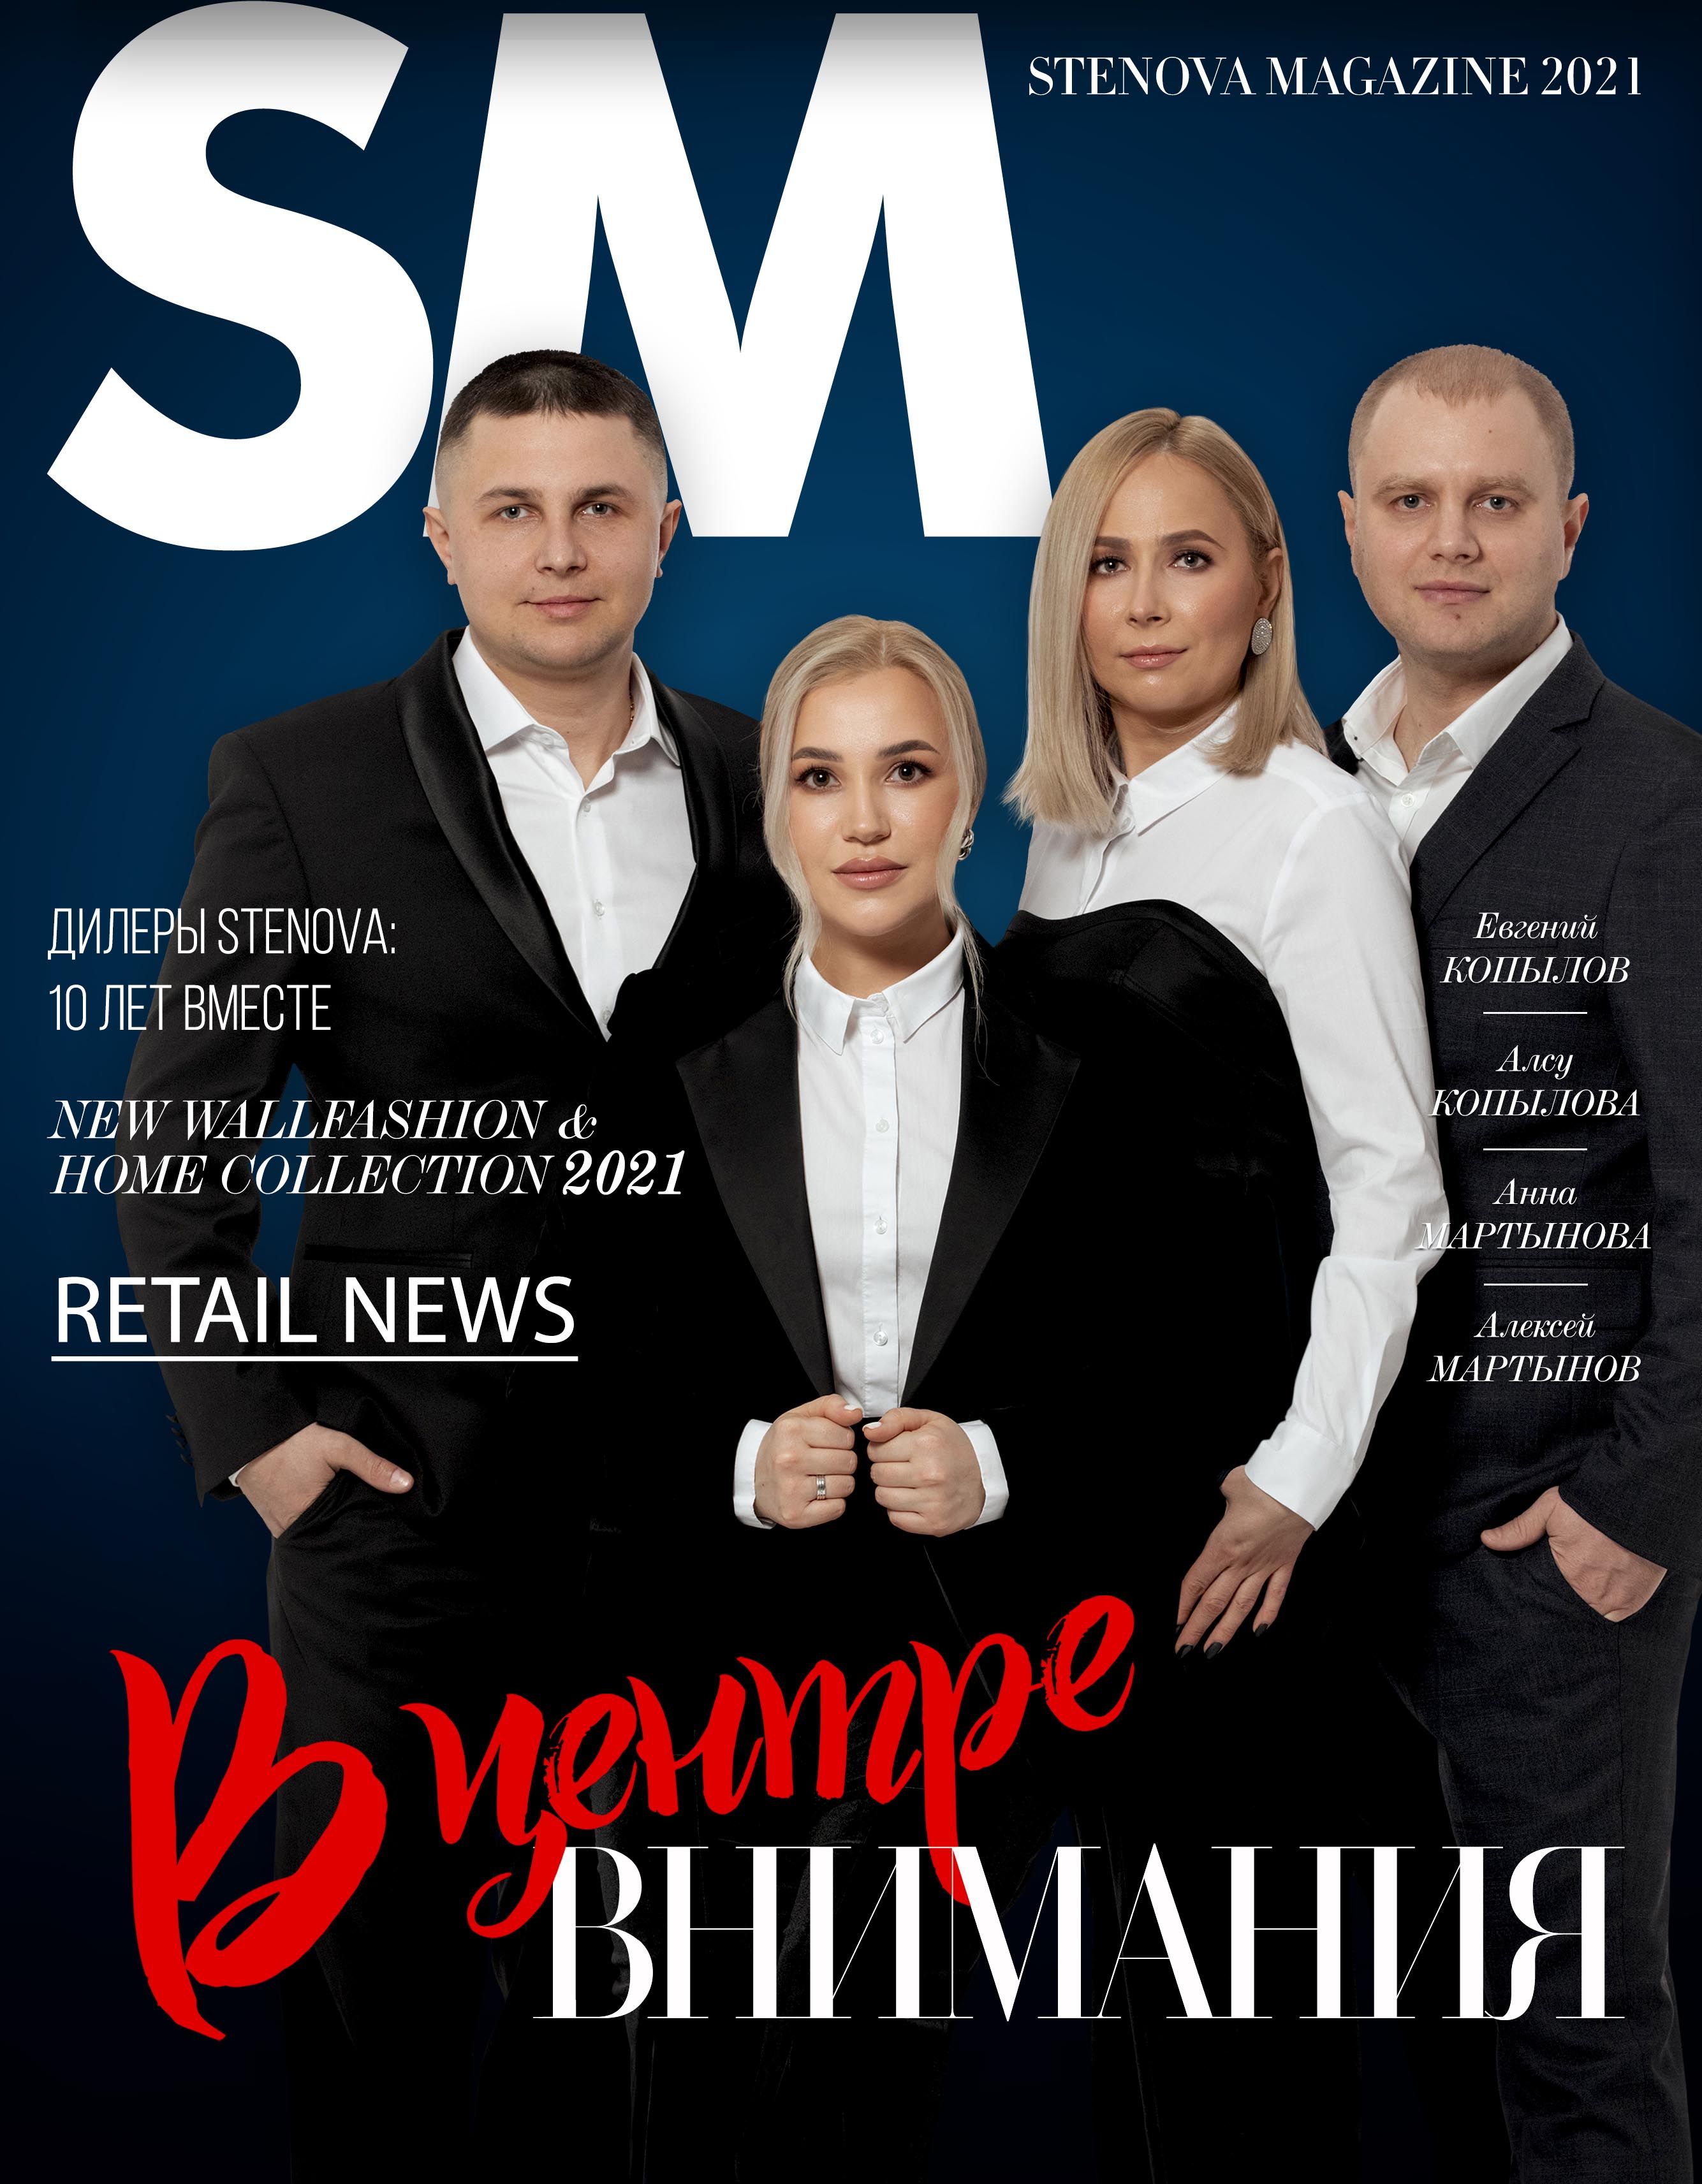 Stenova Magazine 2021